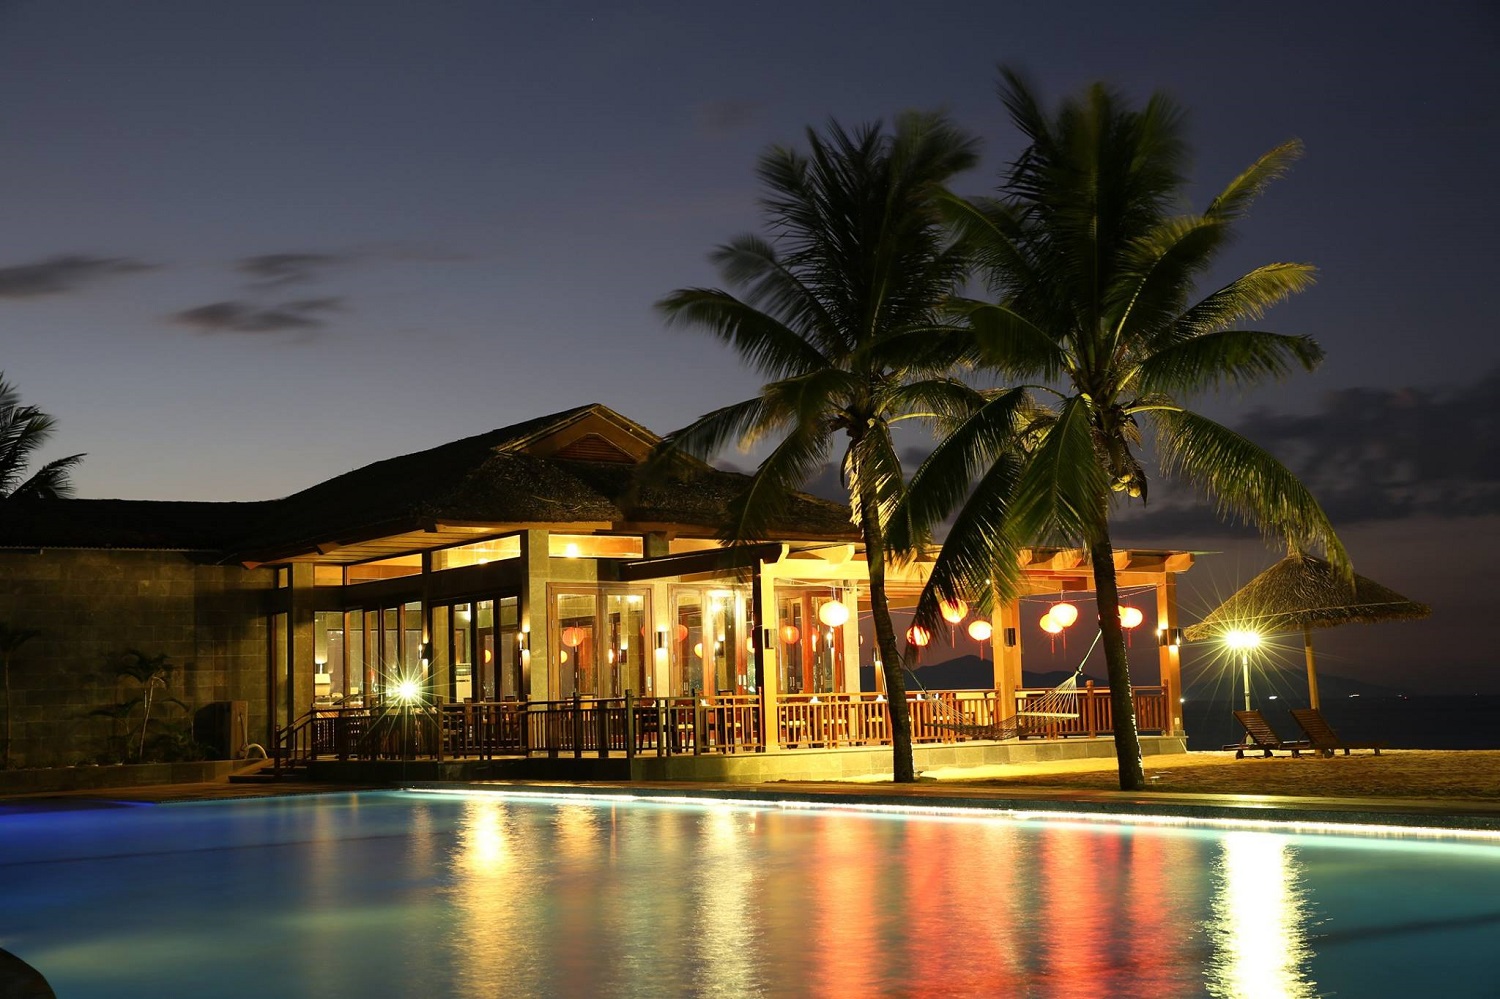 Golden Sand Resort and Spa - Khu nghỉ dưỡng 5 sao có bể bơi dài nhất miền Trung Việt Nam 16